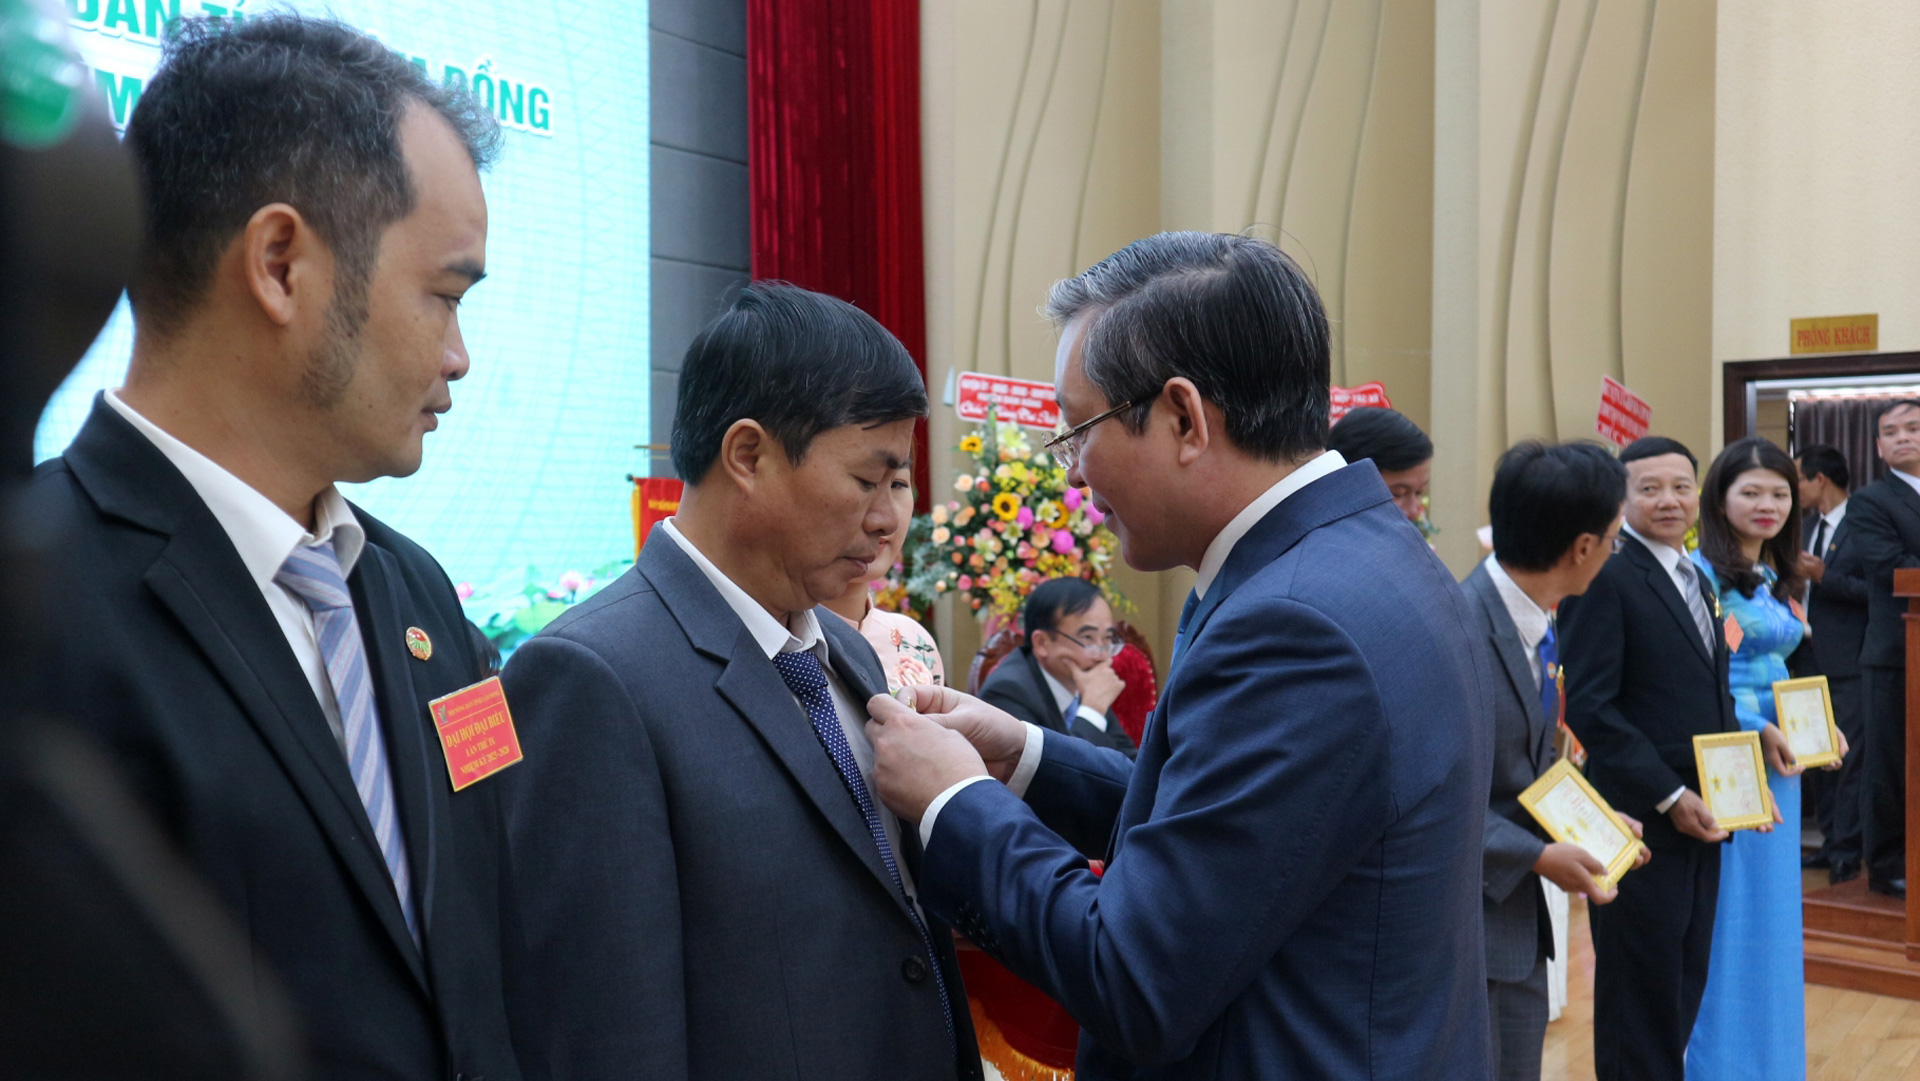 Đồng chí Lương Quốc Đoàn - Chủ tịch Trung ương Hội Nông dân Việt Nam trao tặng Kỷ niệm chương Vì giai cấp công nhân Việt Nam